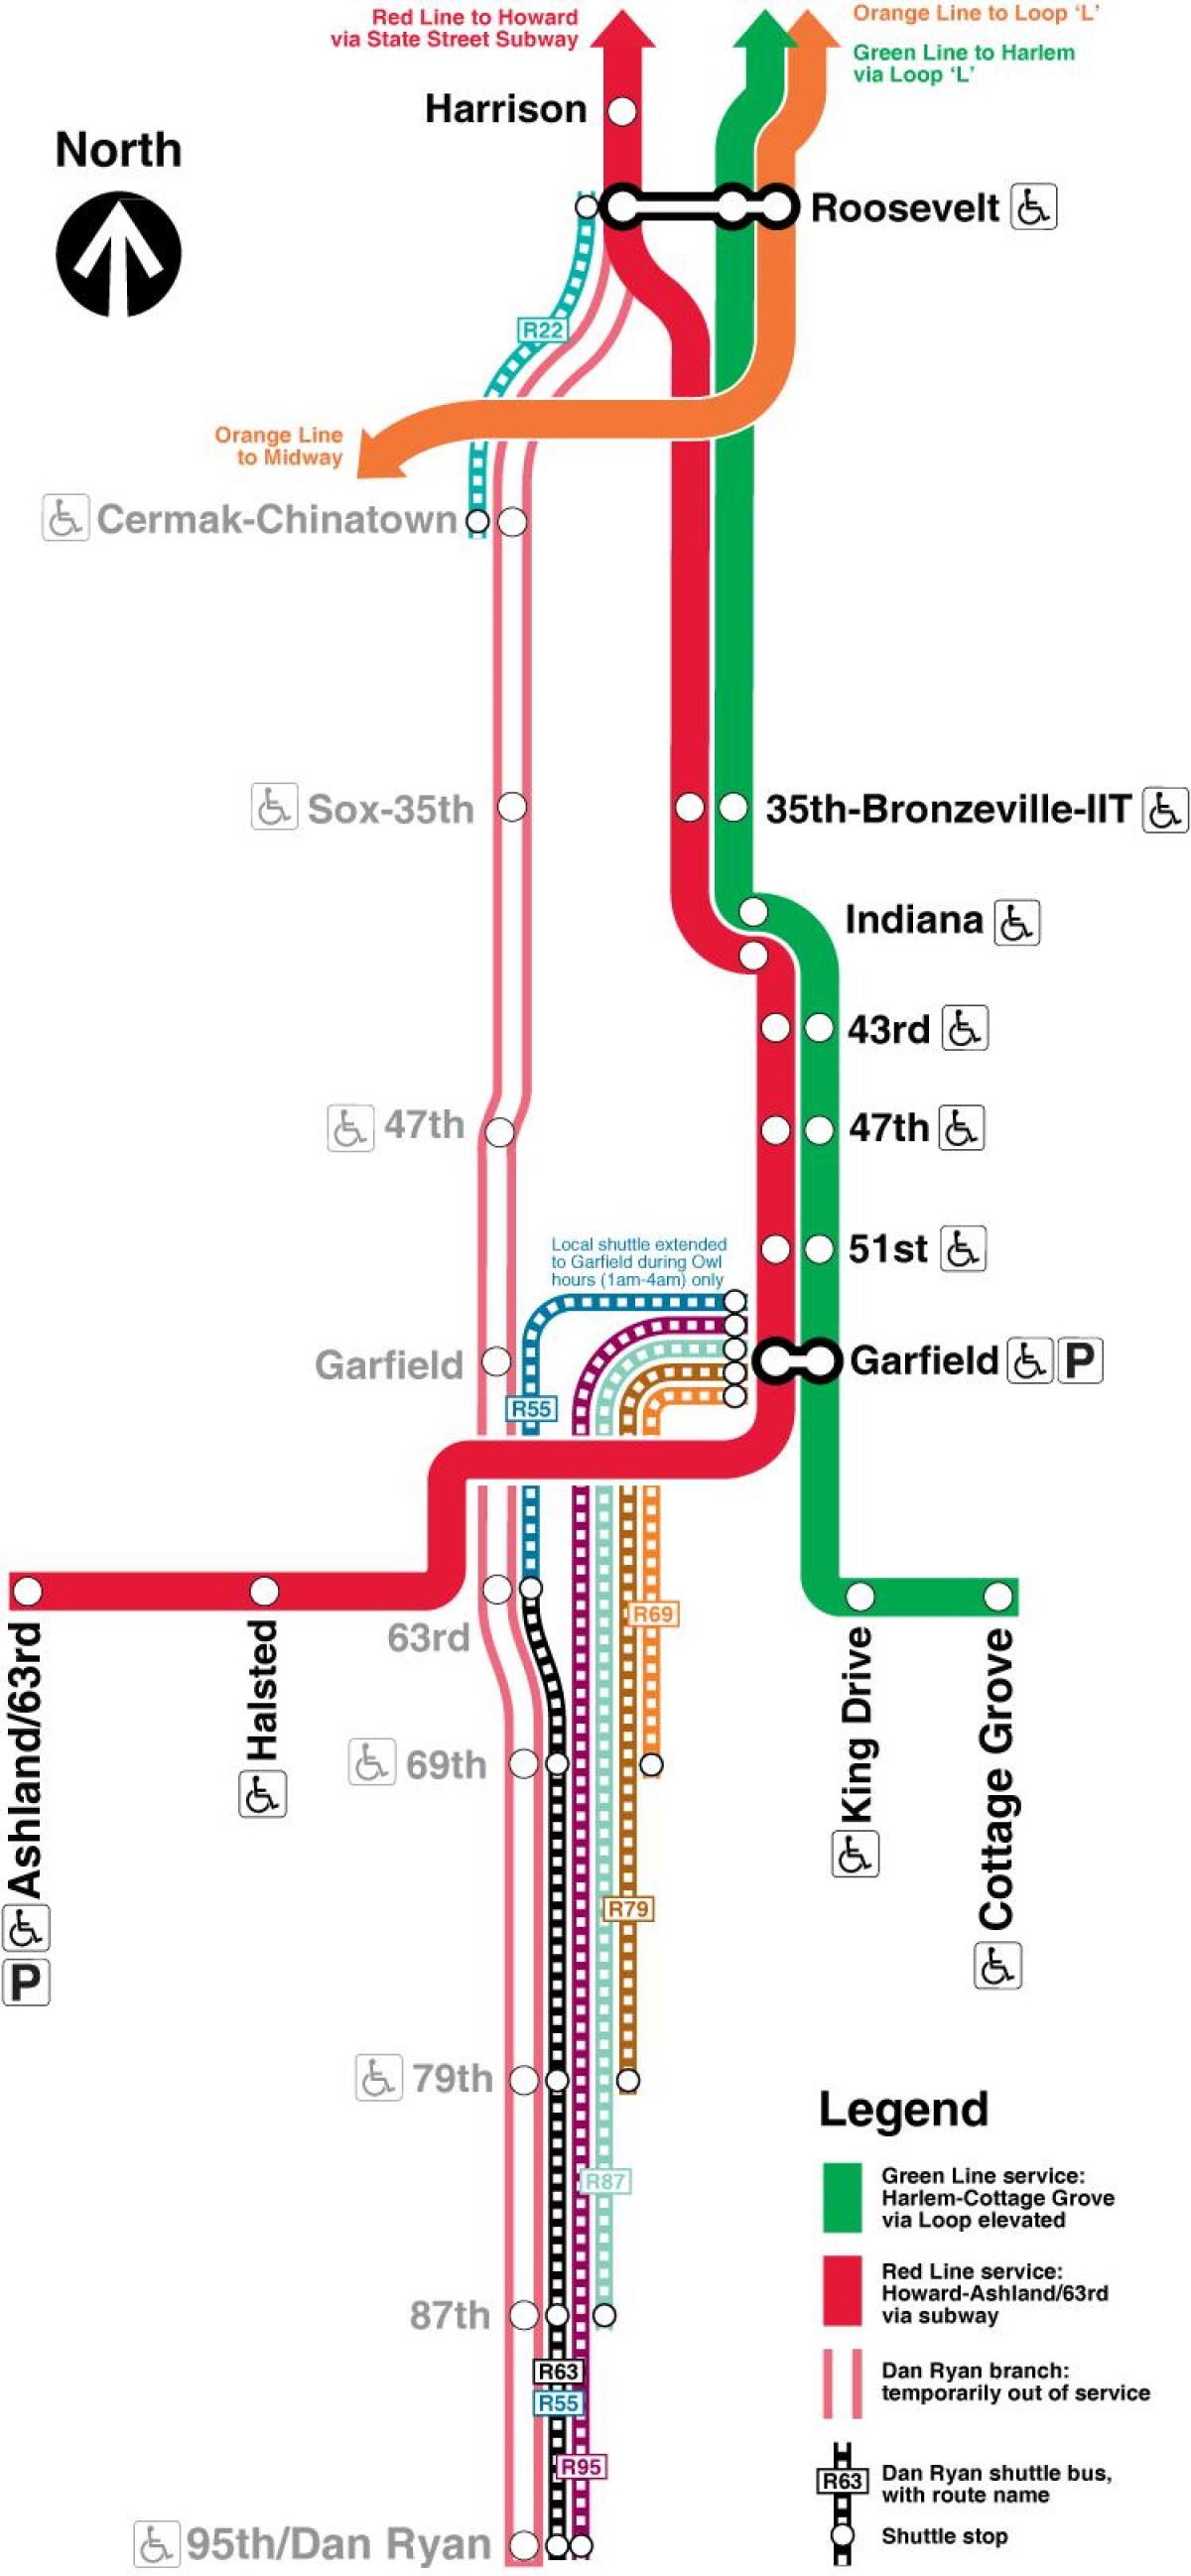 Chicago cta linia roșie arată hartă